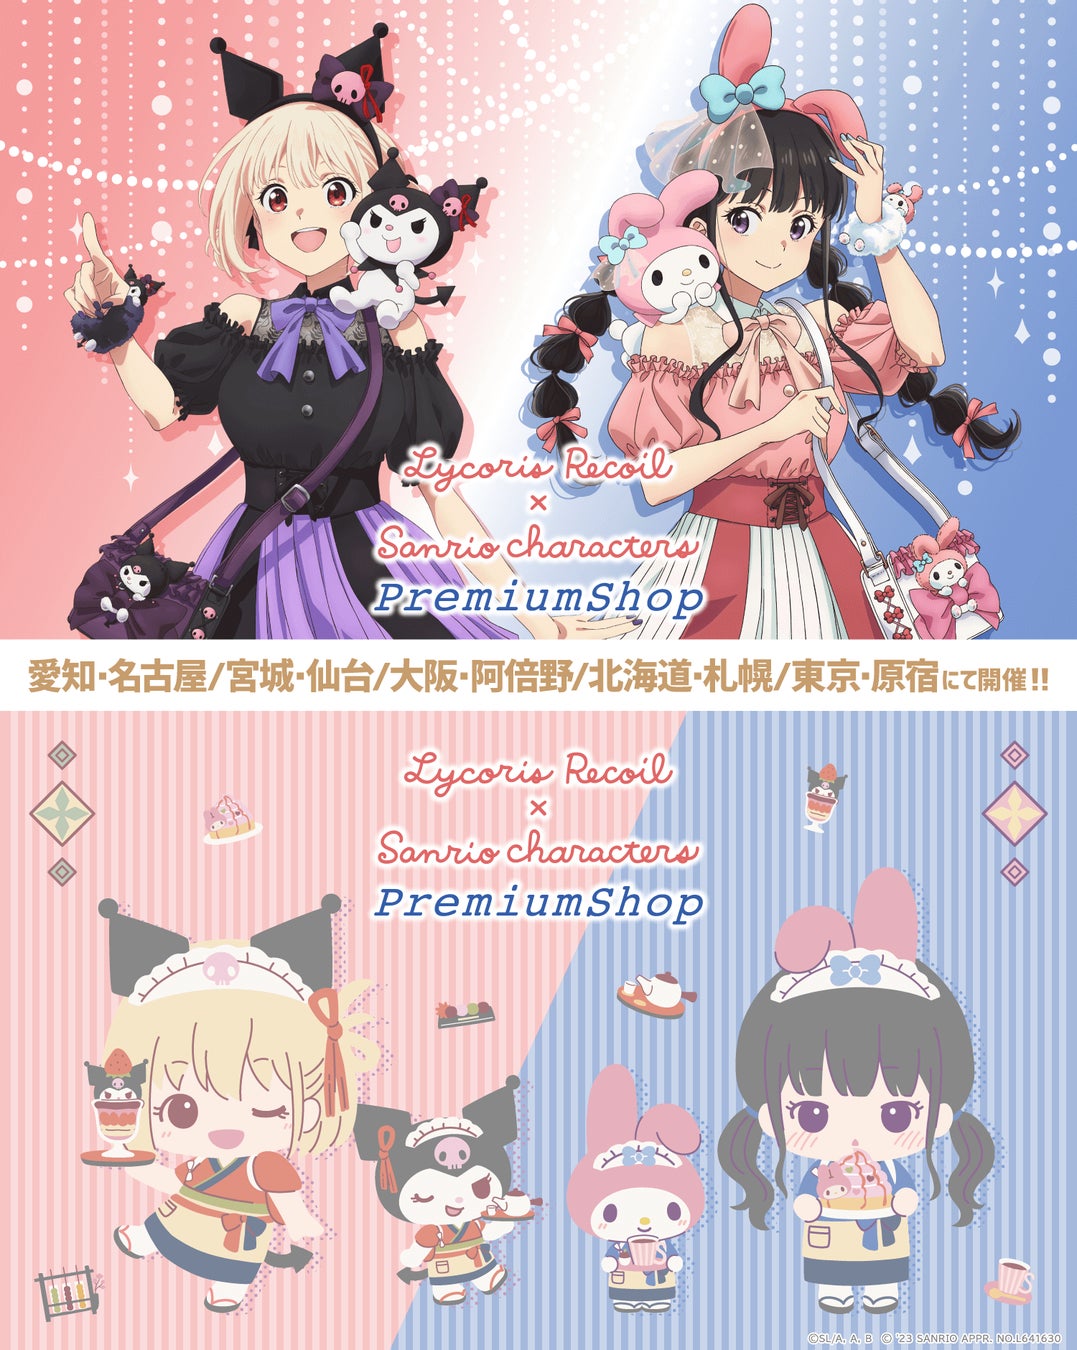 全国5都市にてTVアニメ「リコリス・リコイル」×サンリオキャラクターズ PremiumShop 開催決定！